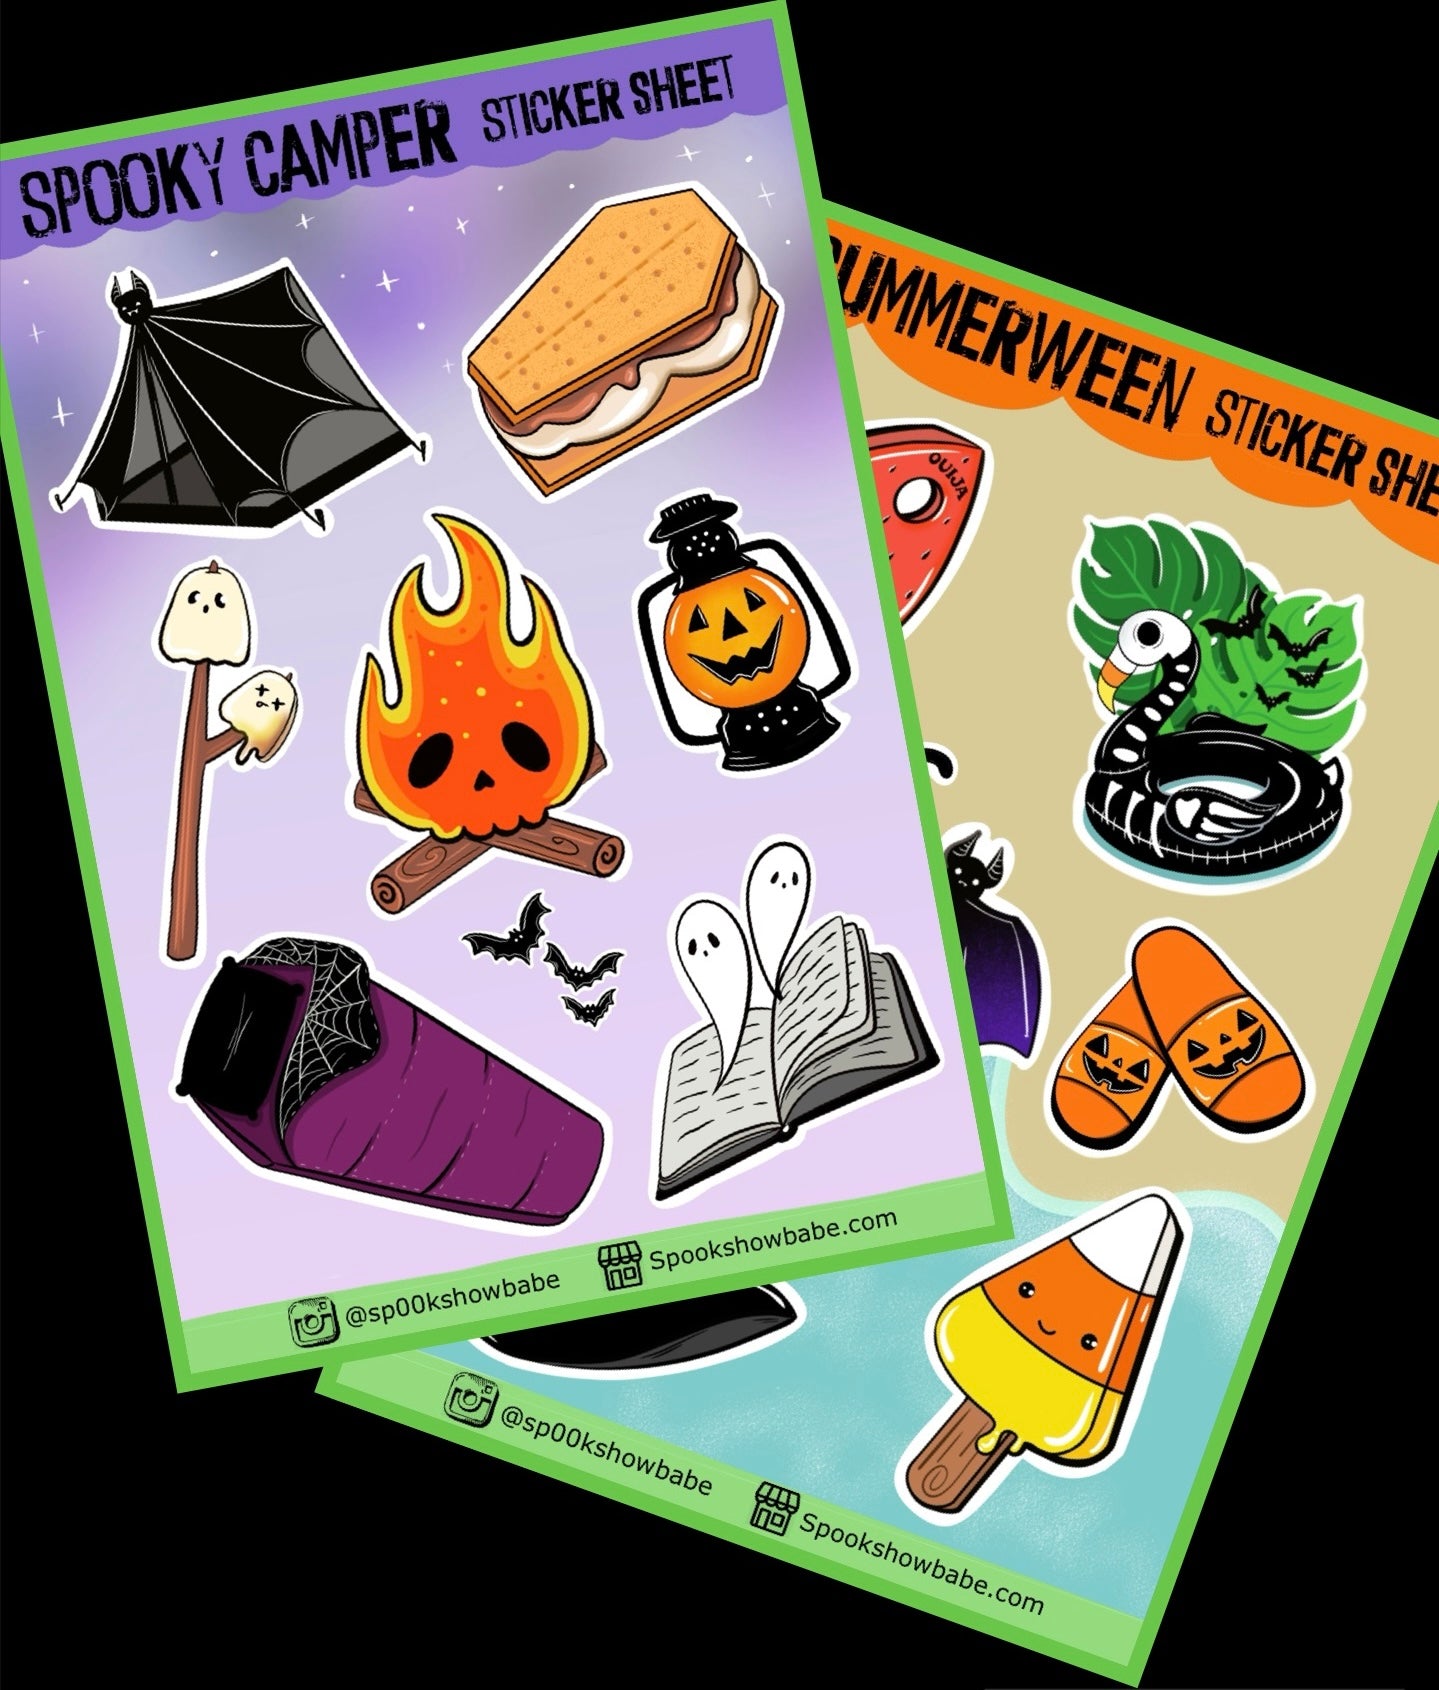 Summerween Sticker Sheet